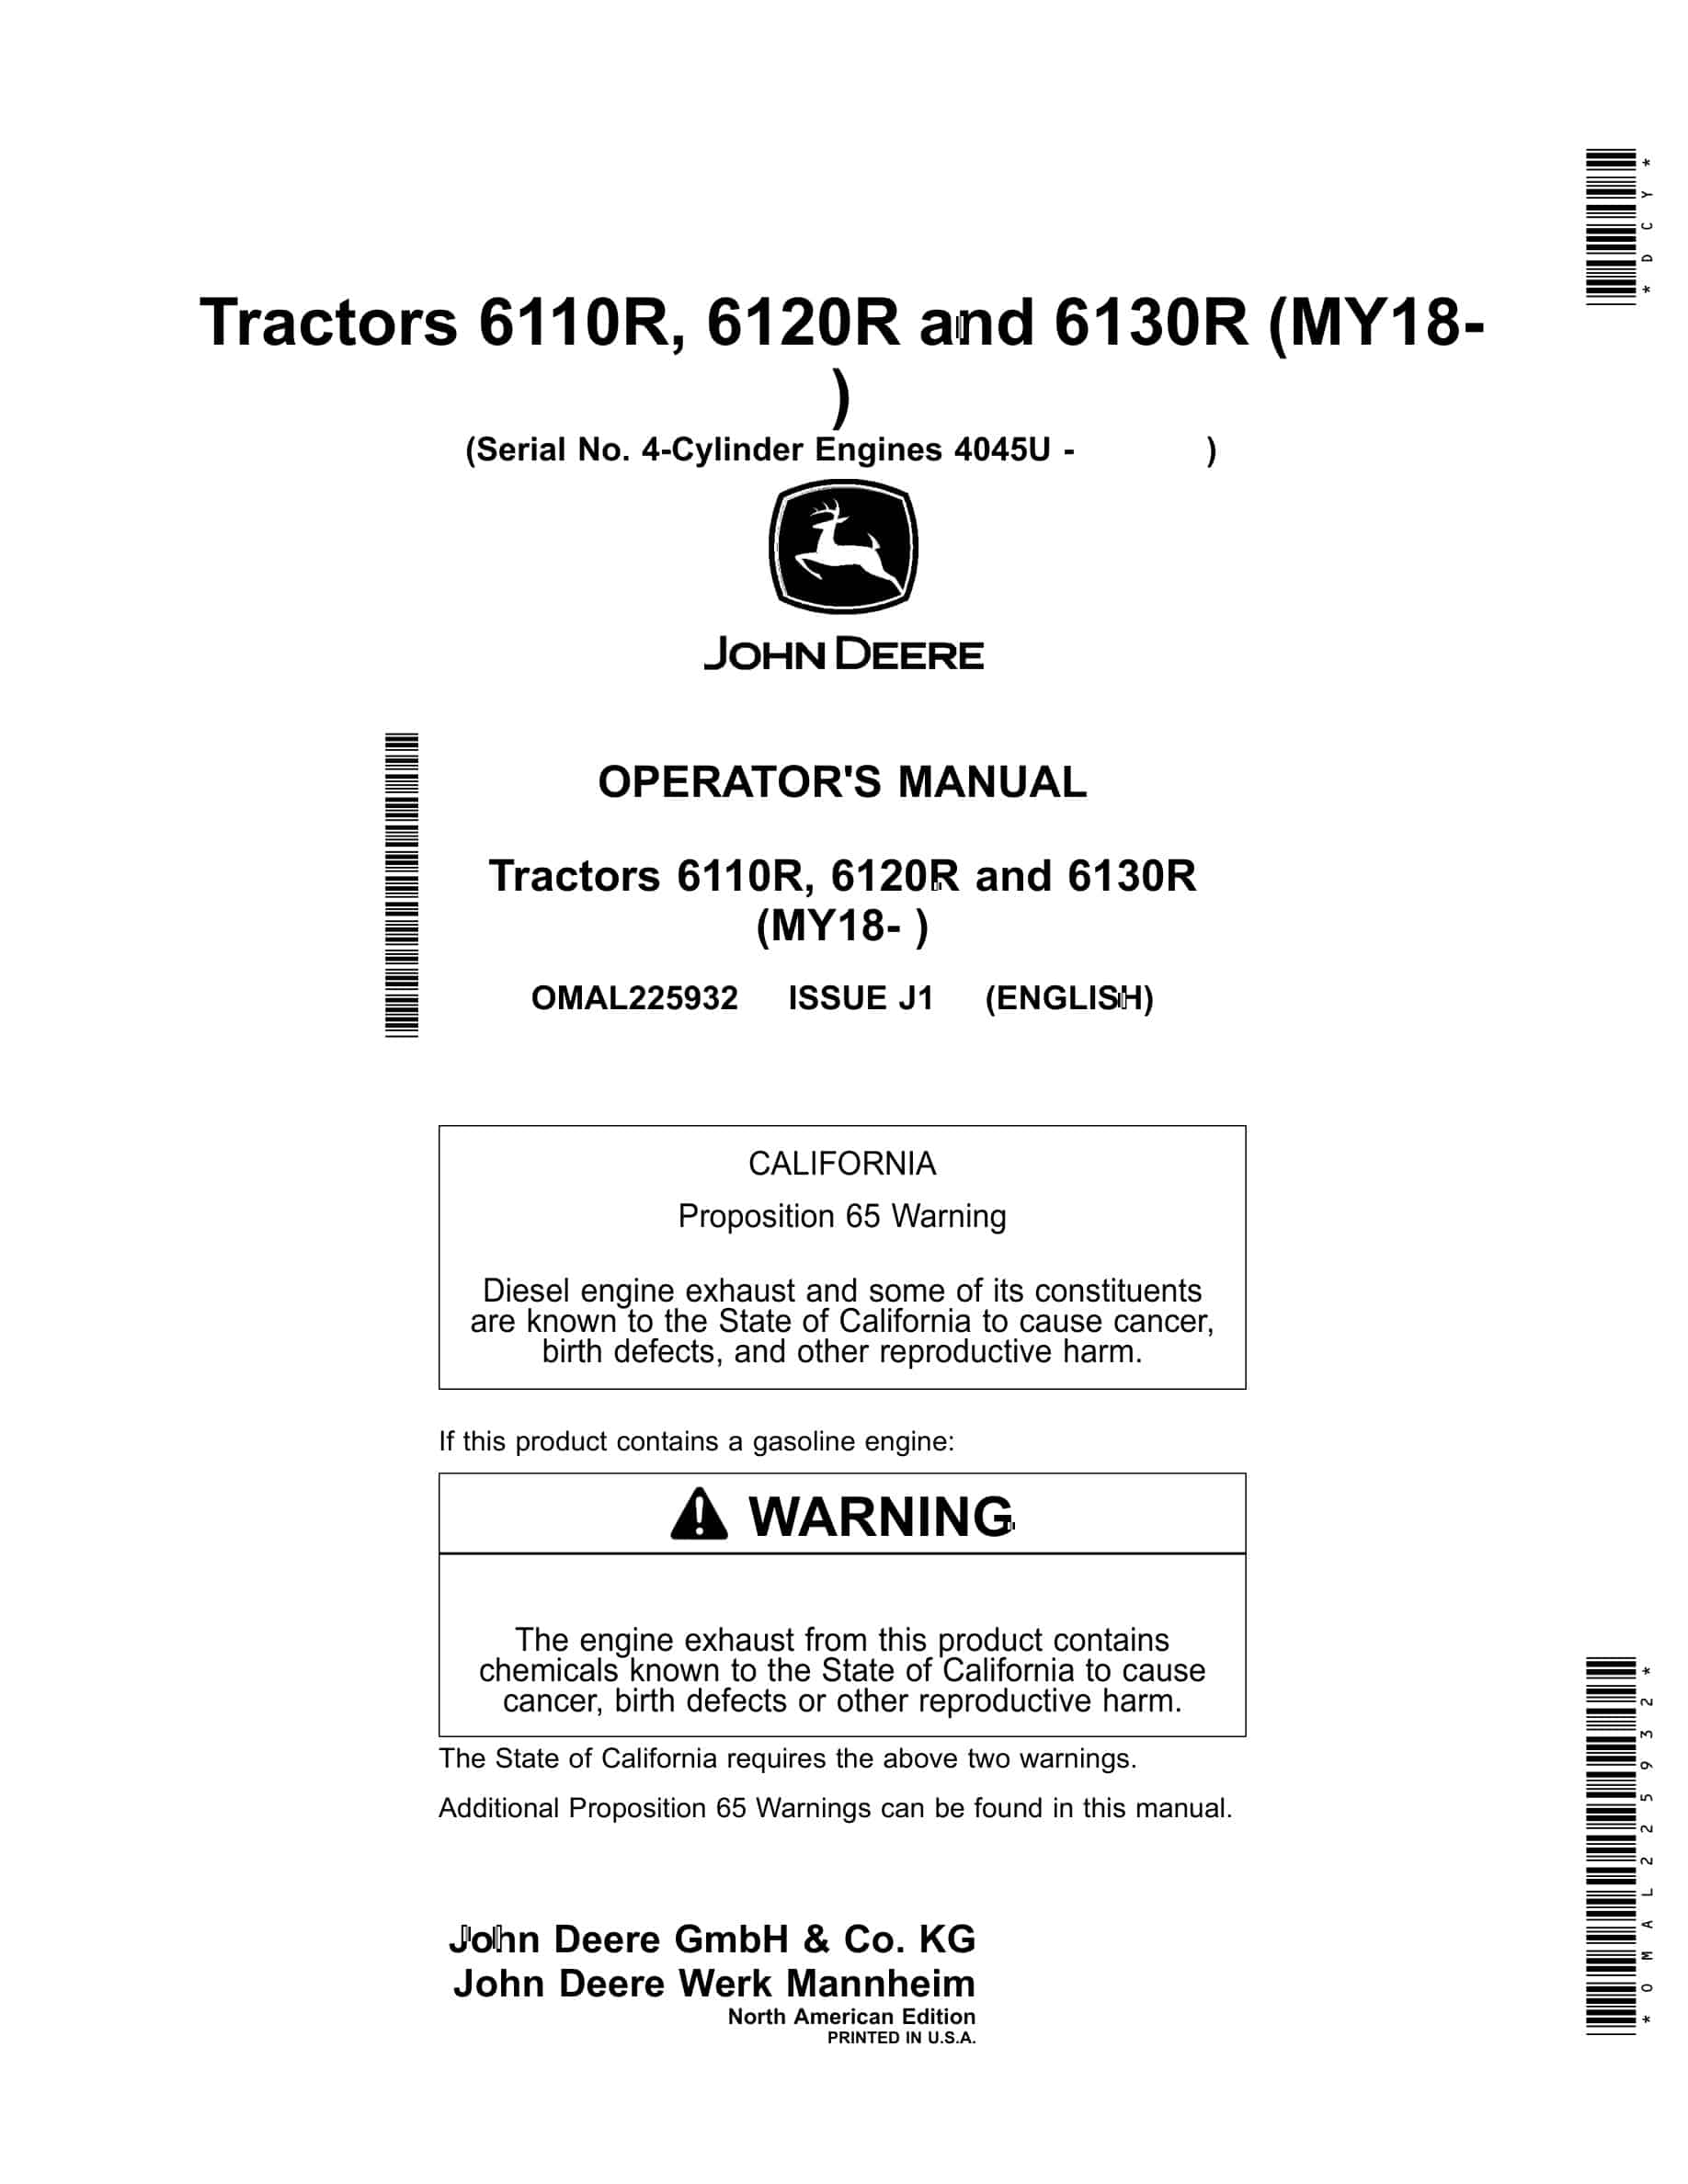 John Deere 6110R, 6120R and 6130R Tractor Operator Manual OMAL225932-1